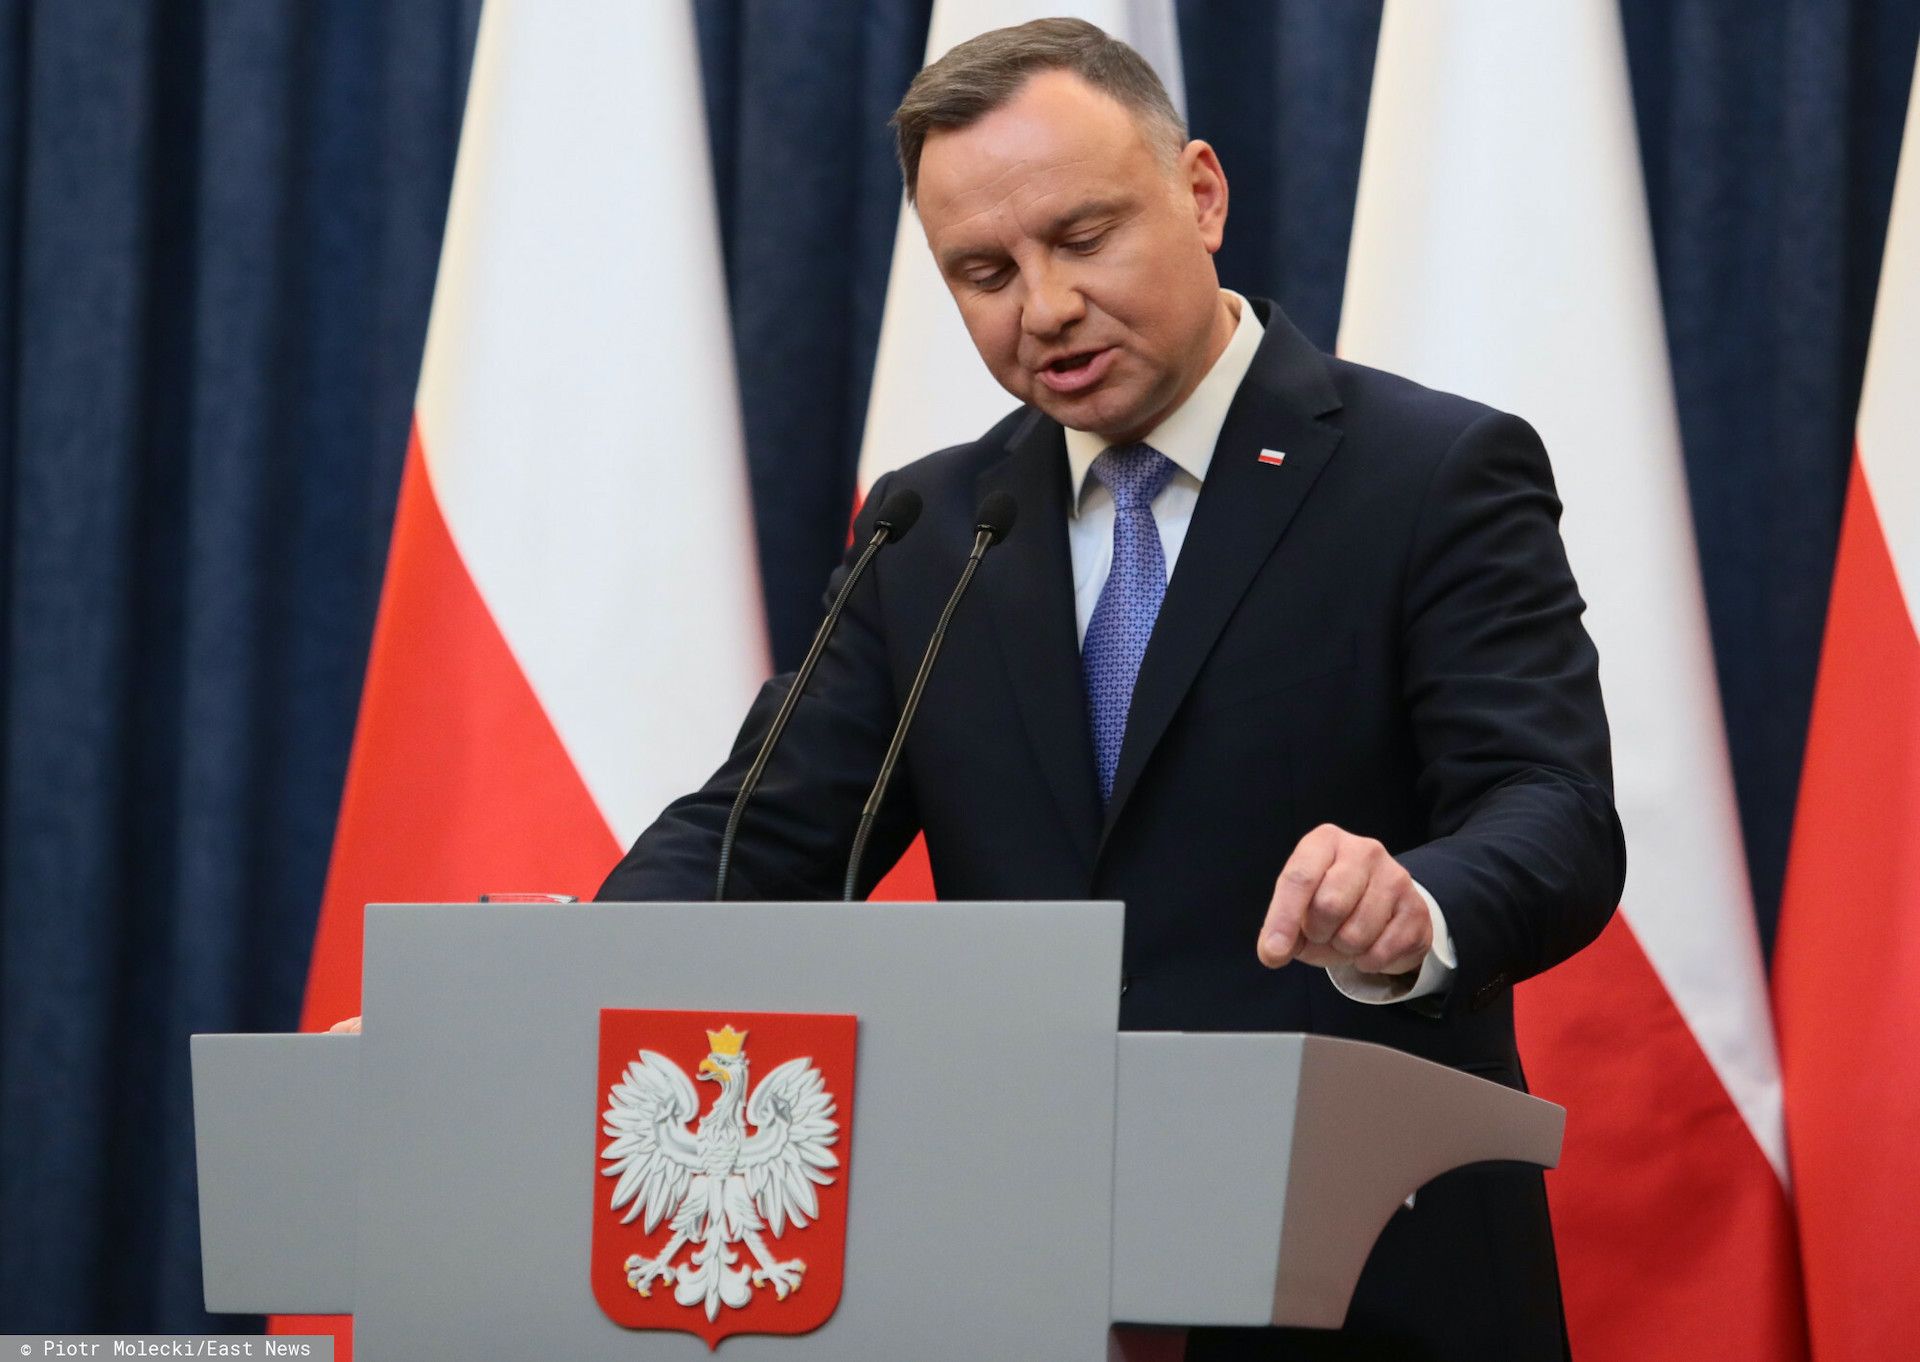 Decyzja ws. lex TVN zapadła, jest weto, ale prezydent Andrzej Duda publicznie krytykuje rząd PiS